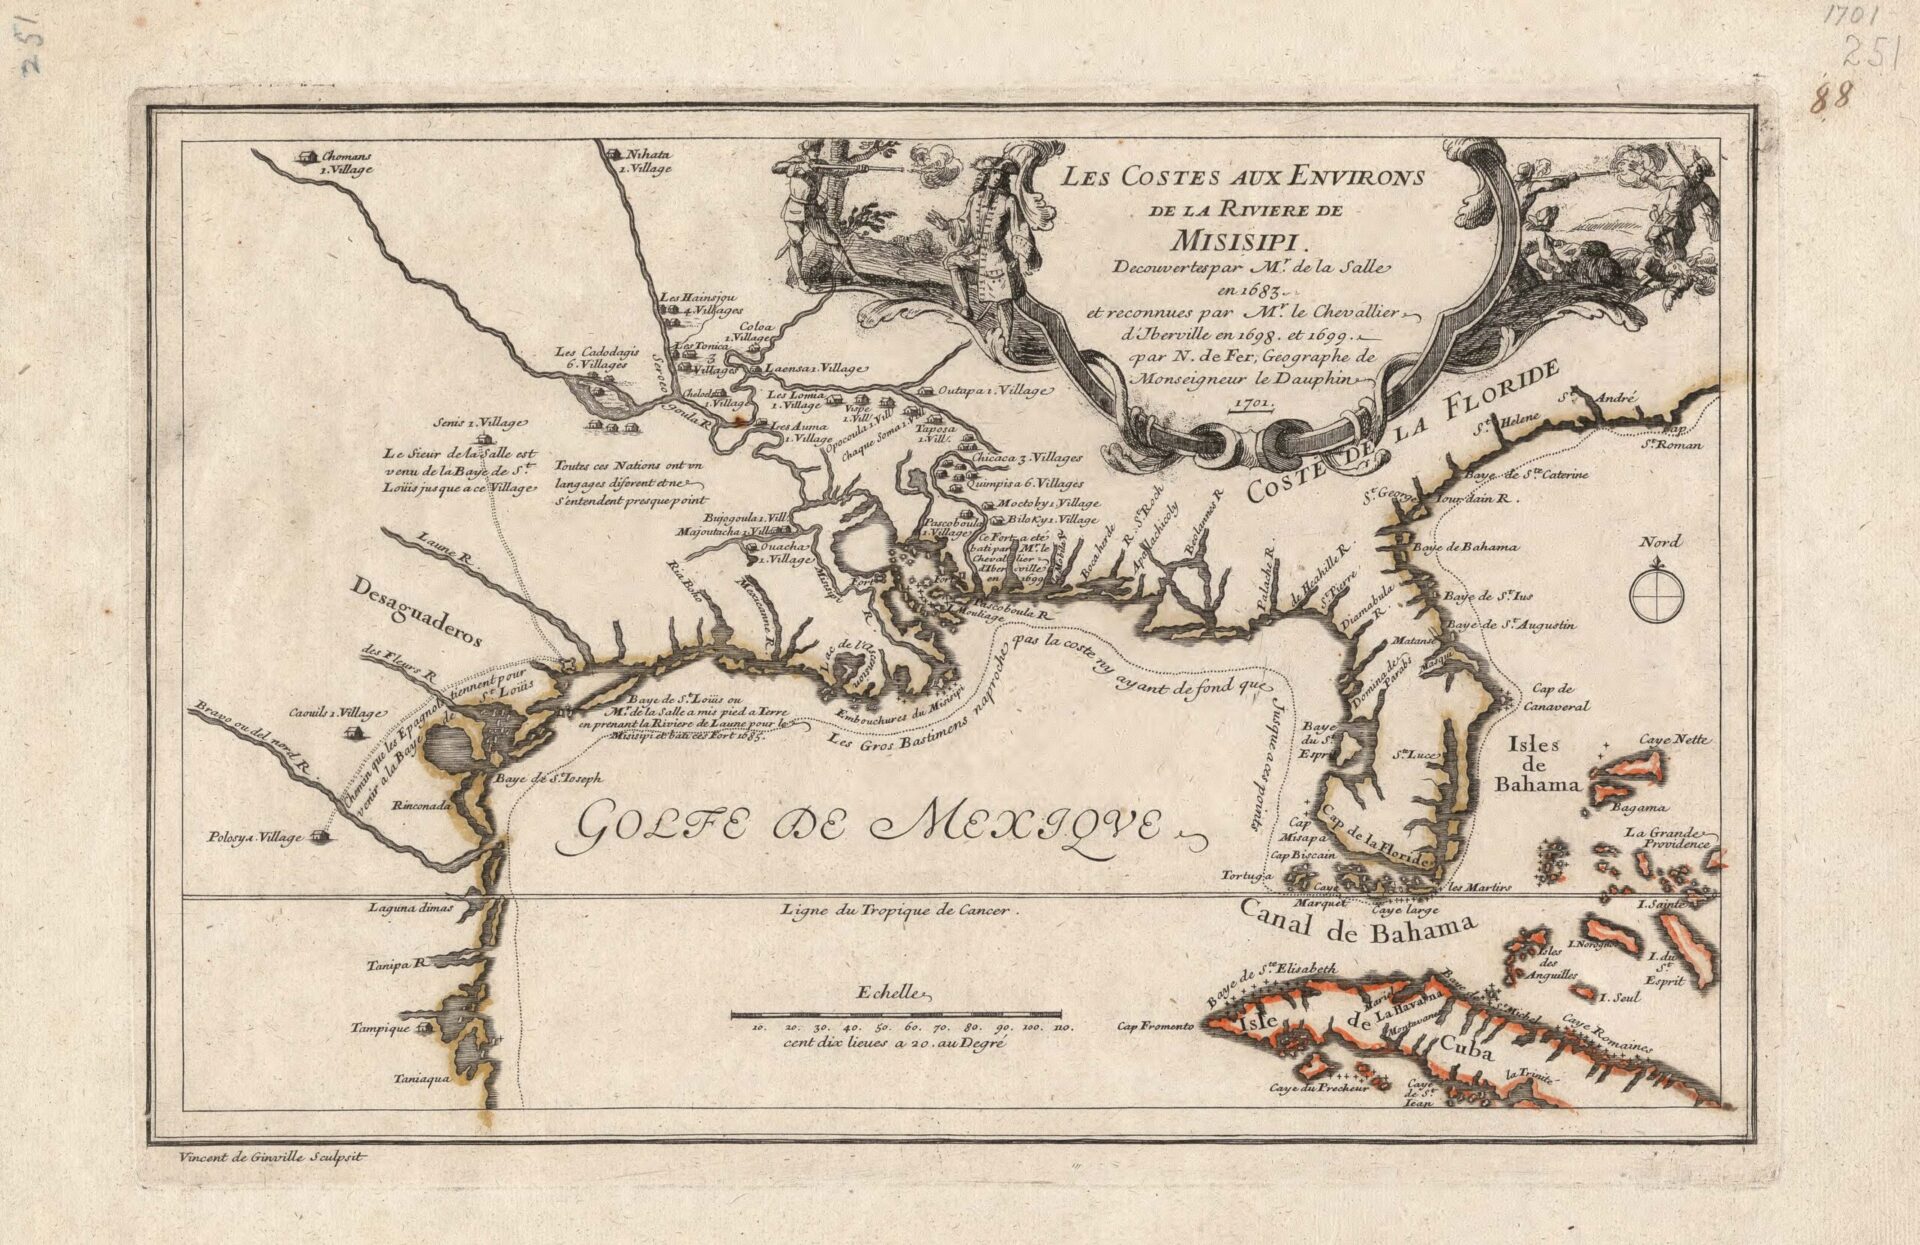 Les Costes aux Environs de la Rivière de Misisipi, 1701